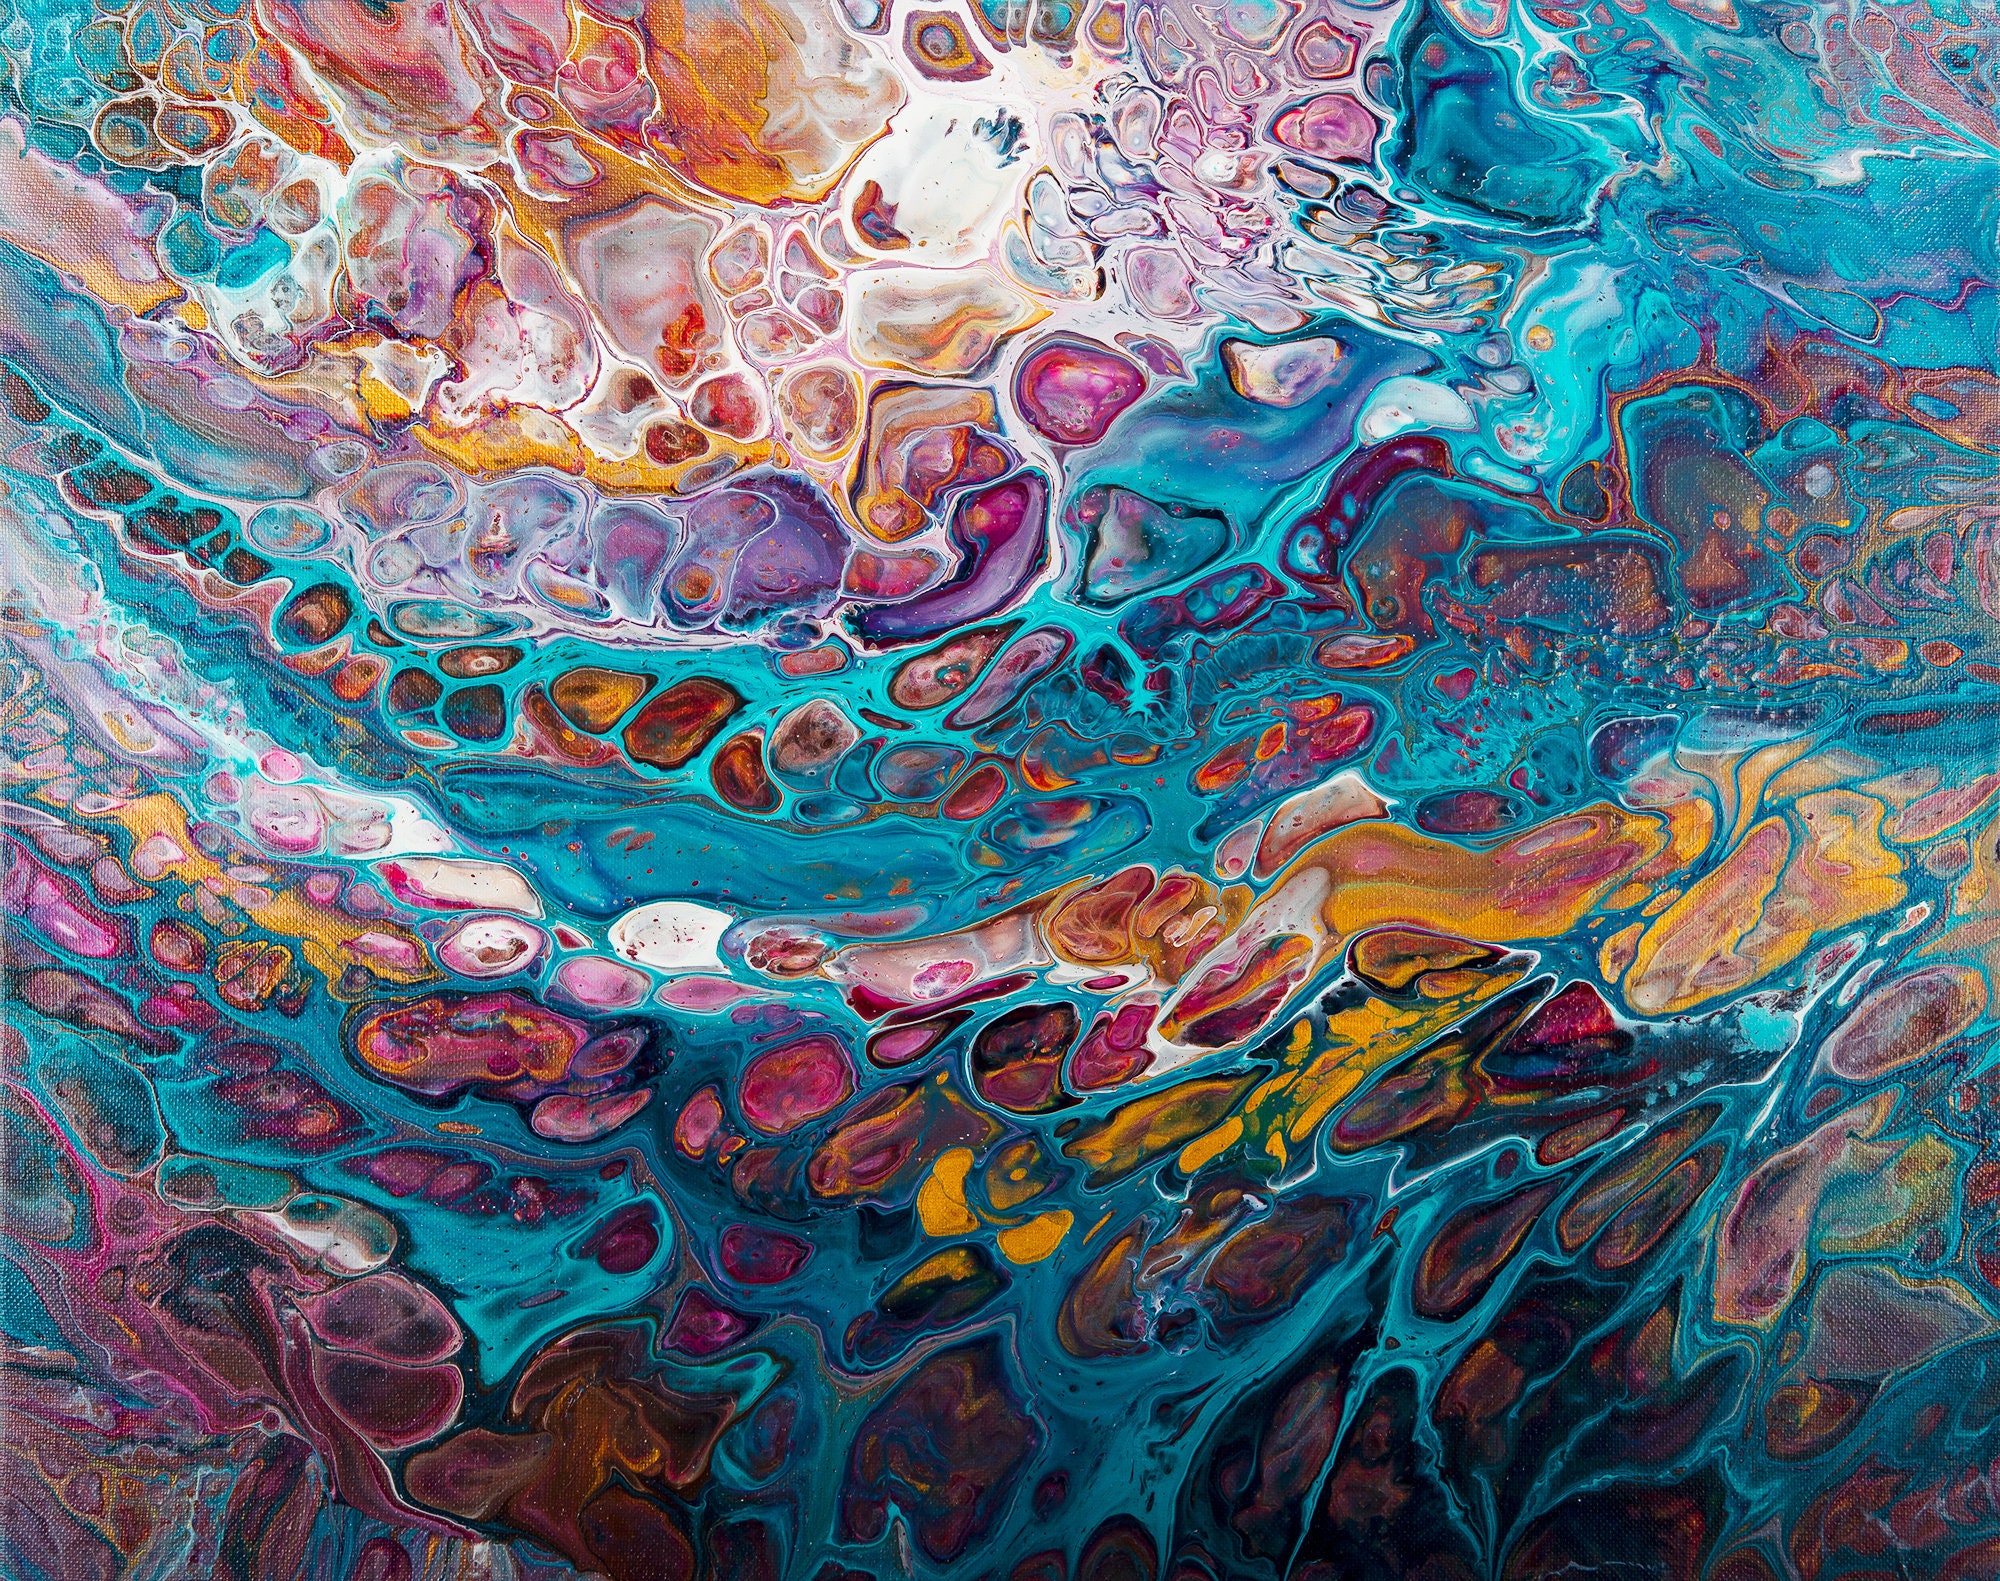 Acrylic pour 16 x 20 fluid art fluid painting Abstract art | Etsy